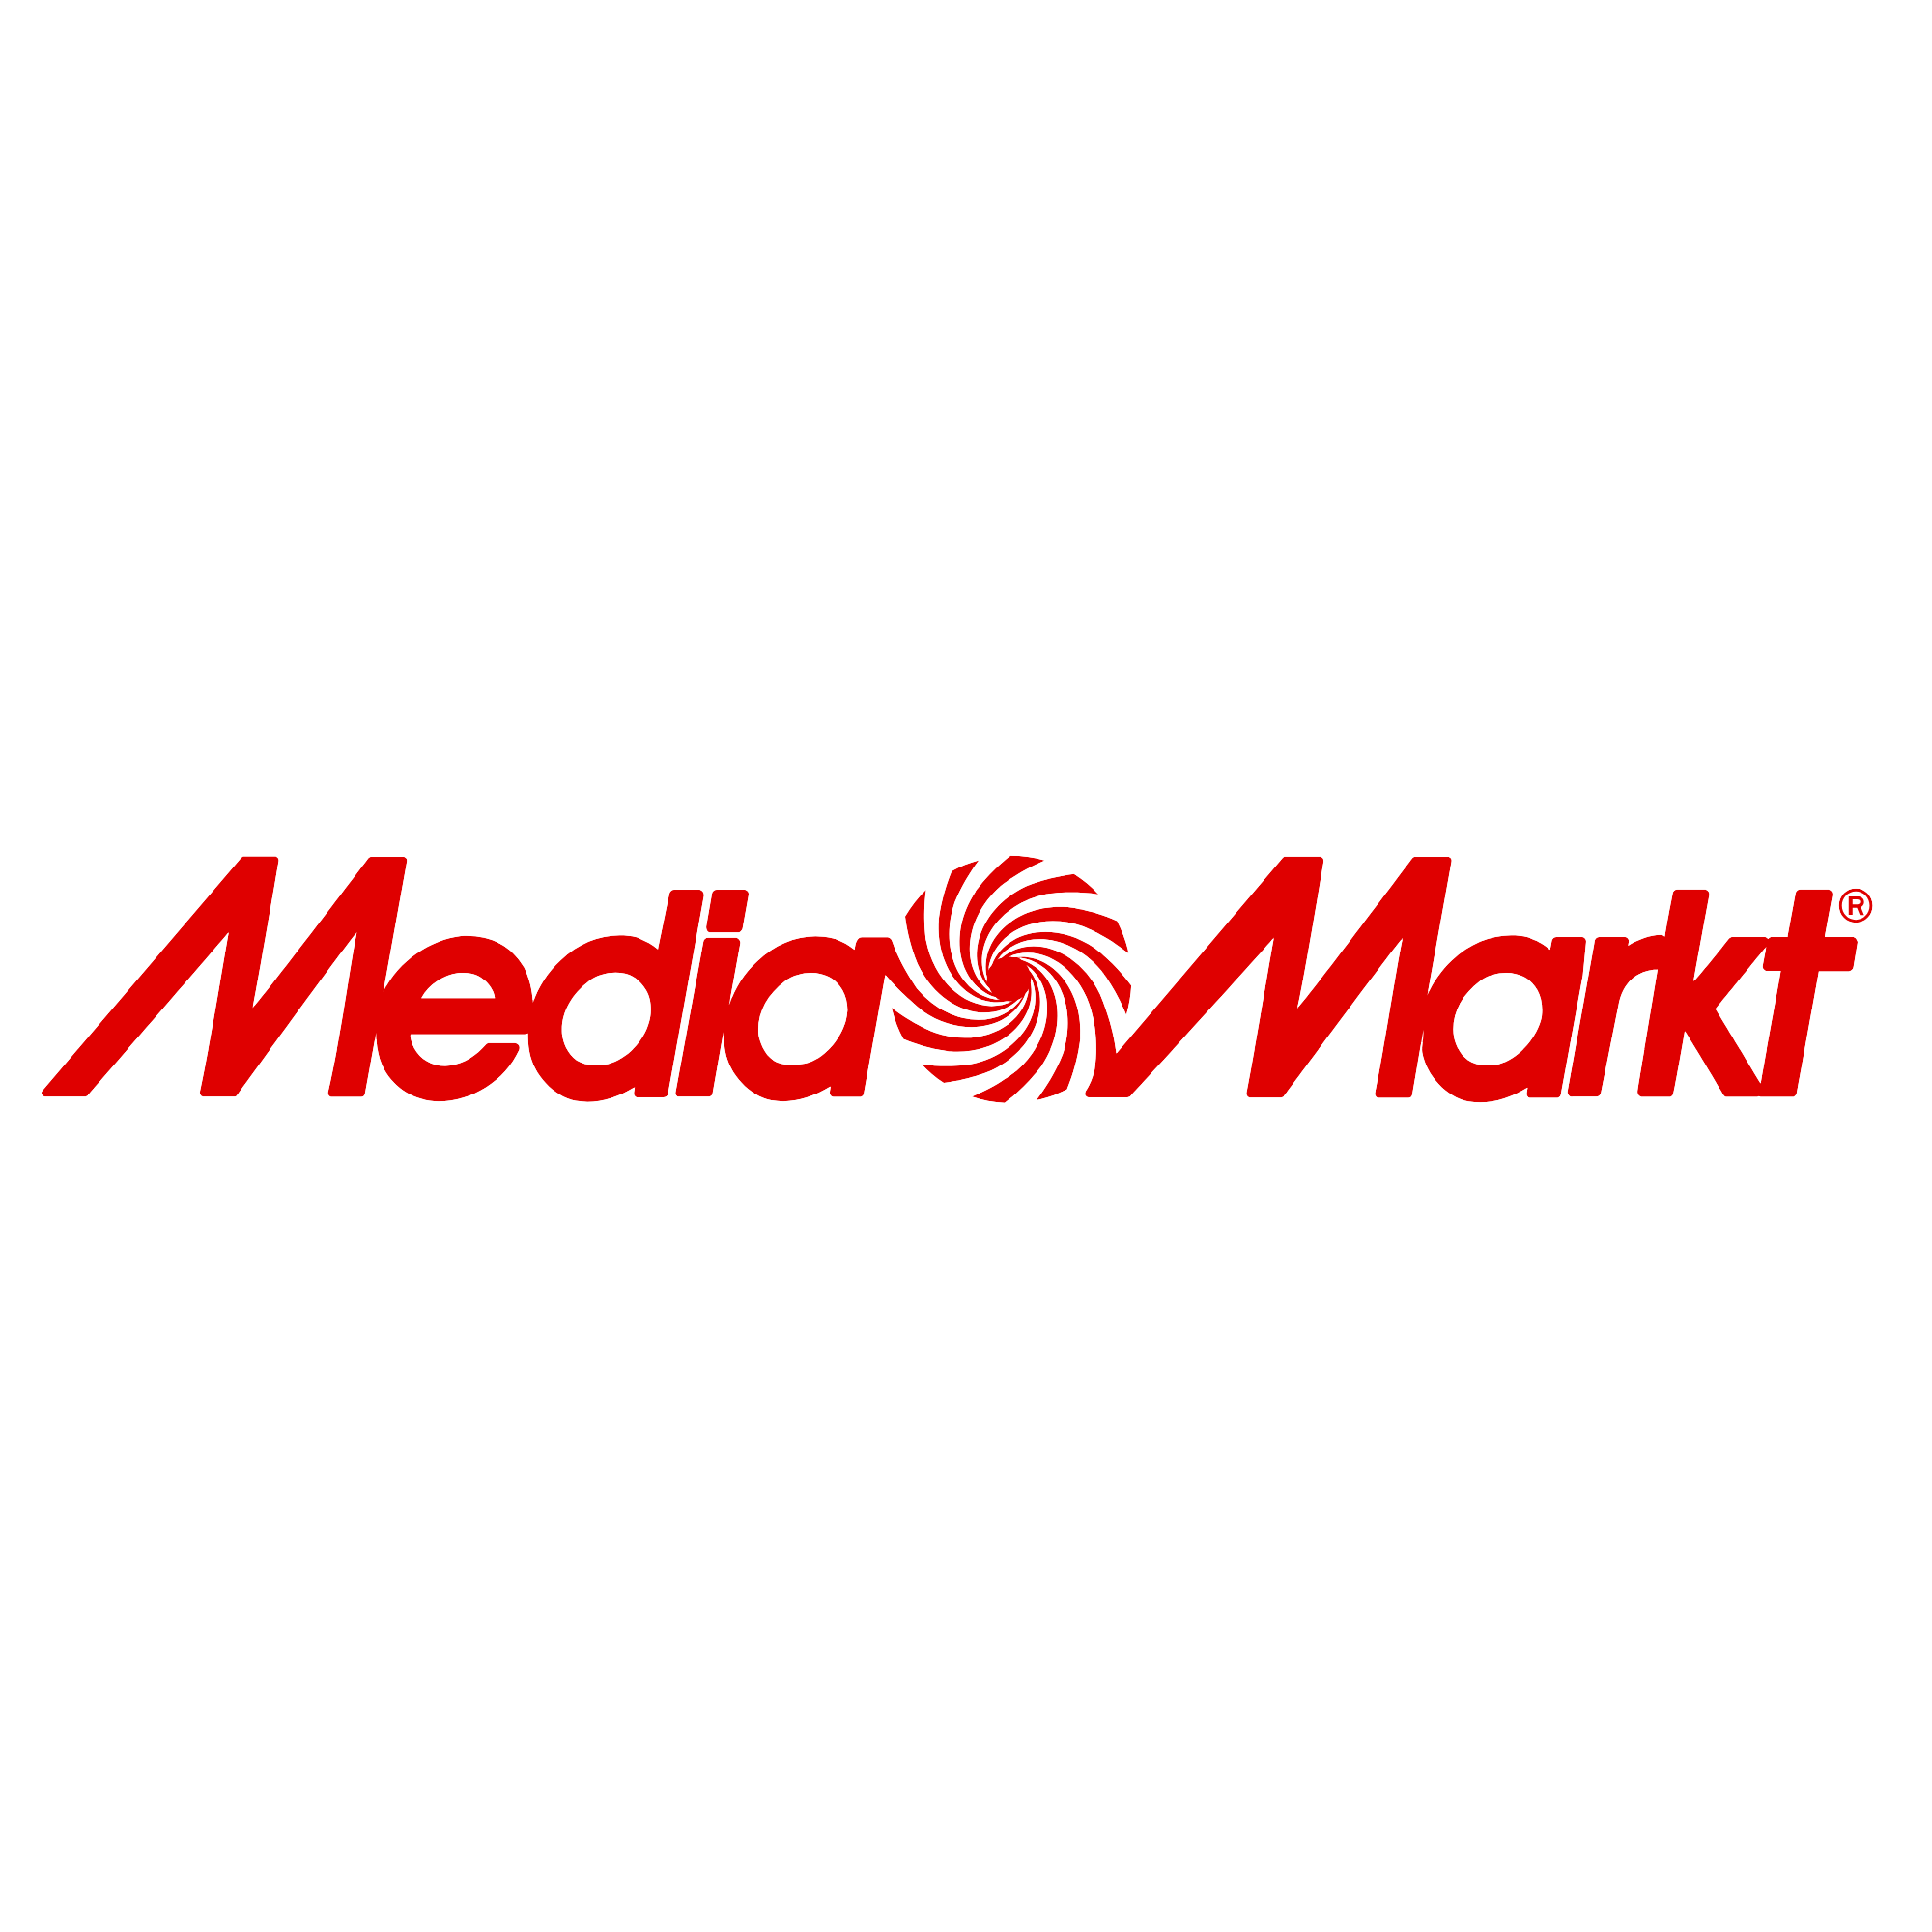 El Gran con las | MediaMarkt | MediaMarkt